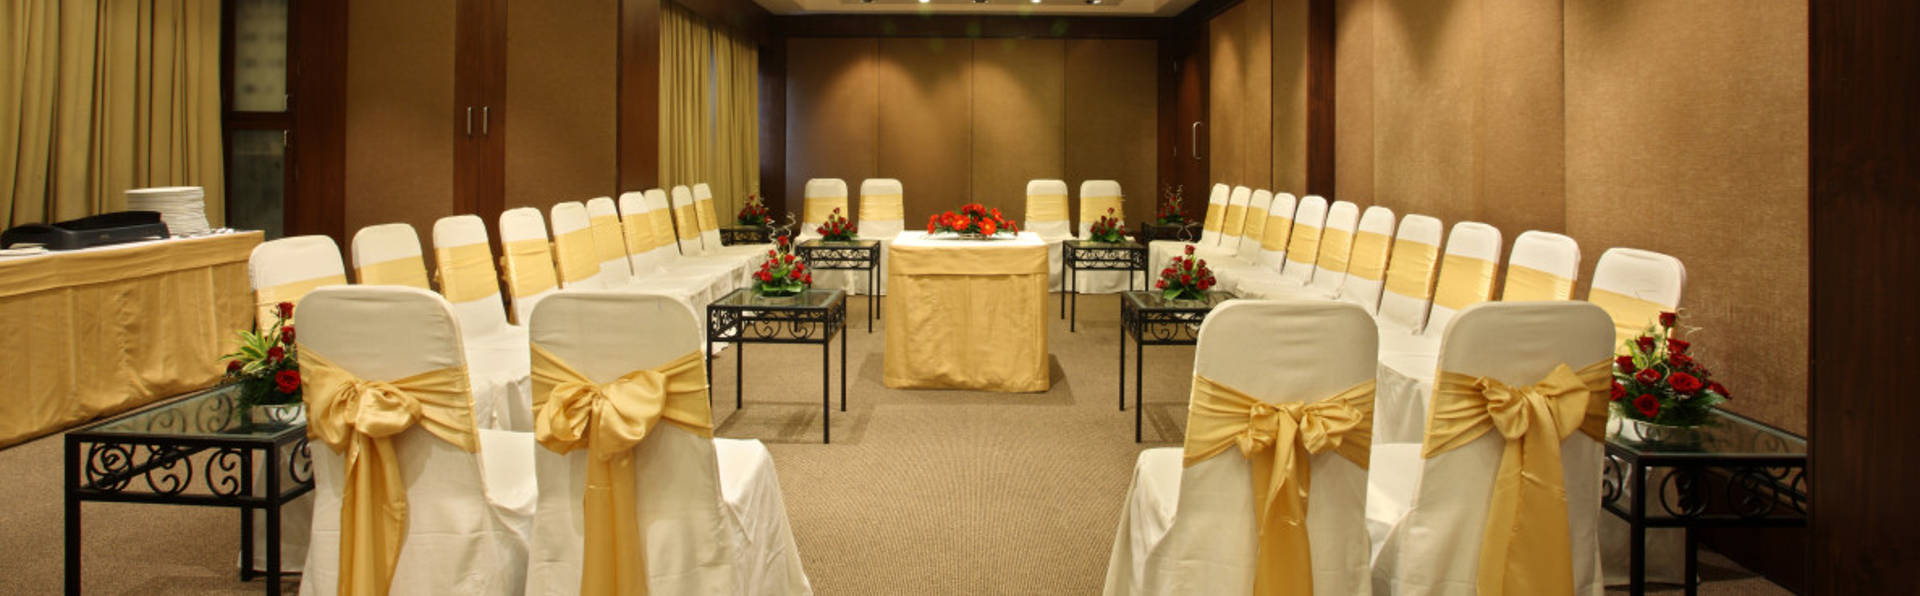 Banquet Conference Hall Resort Panchgani Near Mahabaleshwar